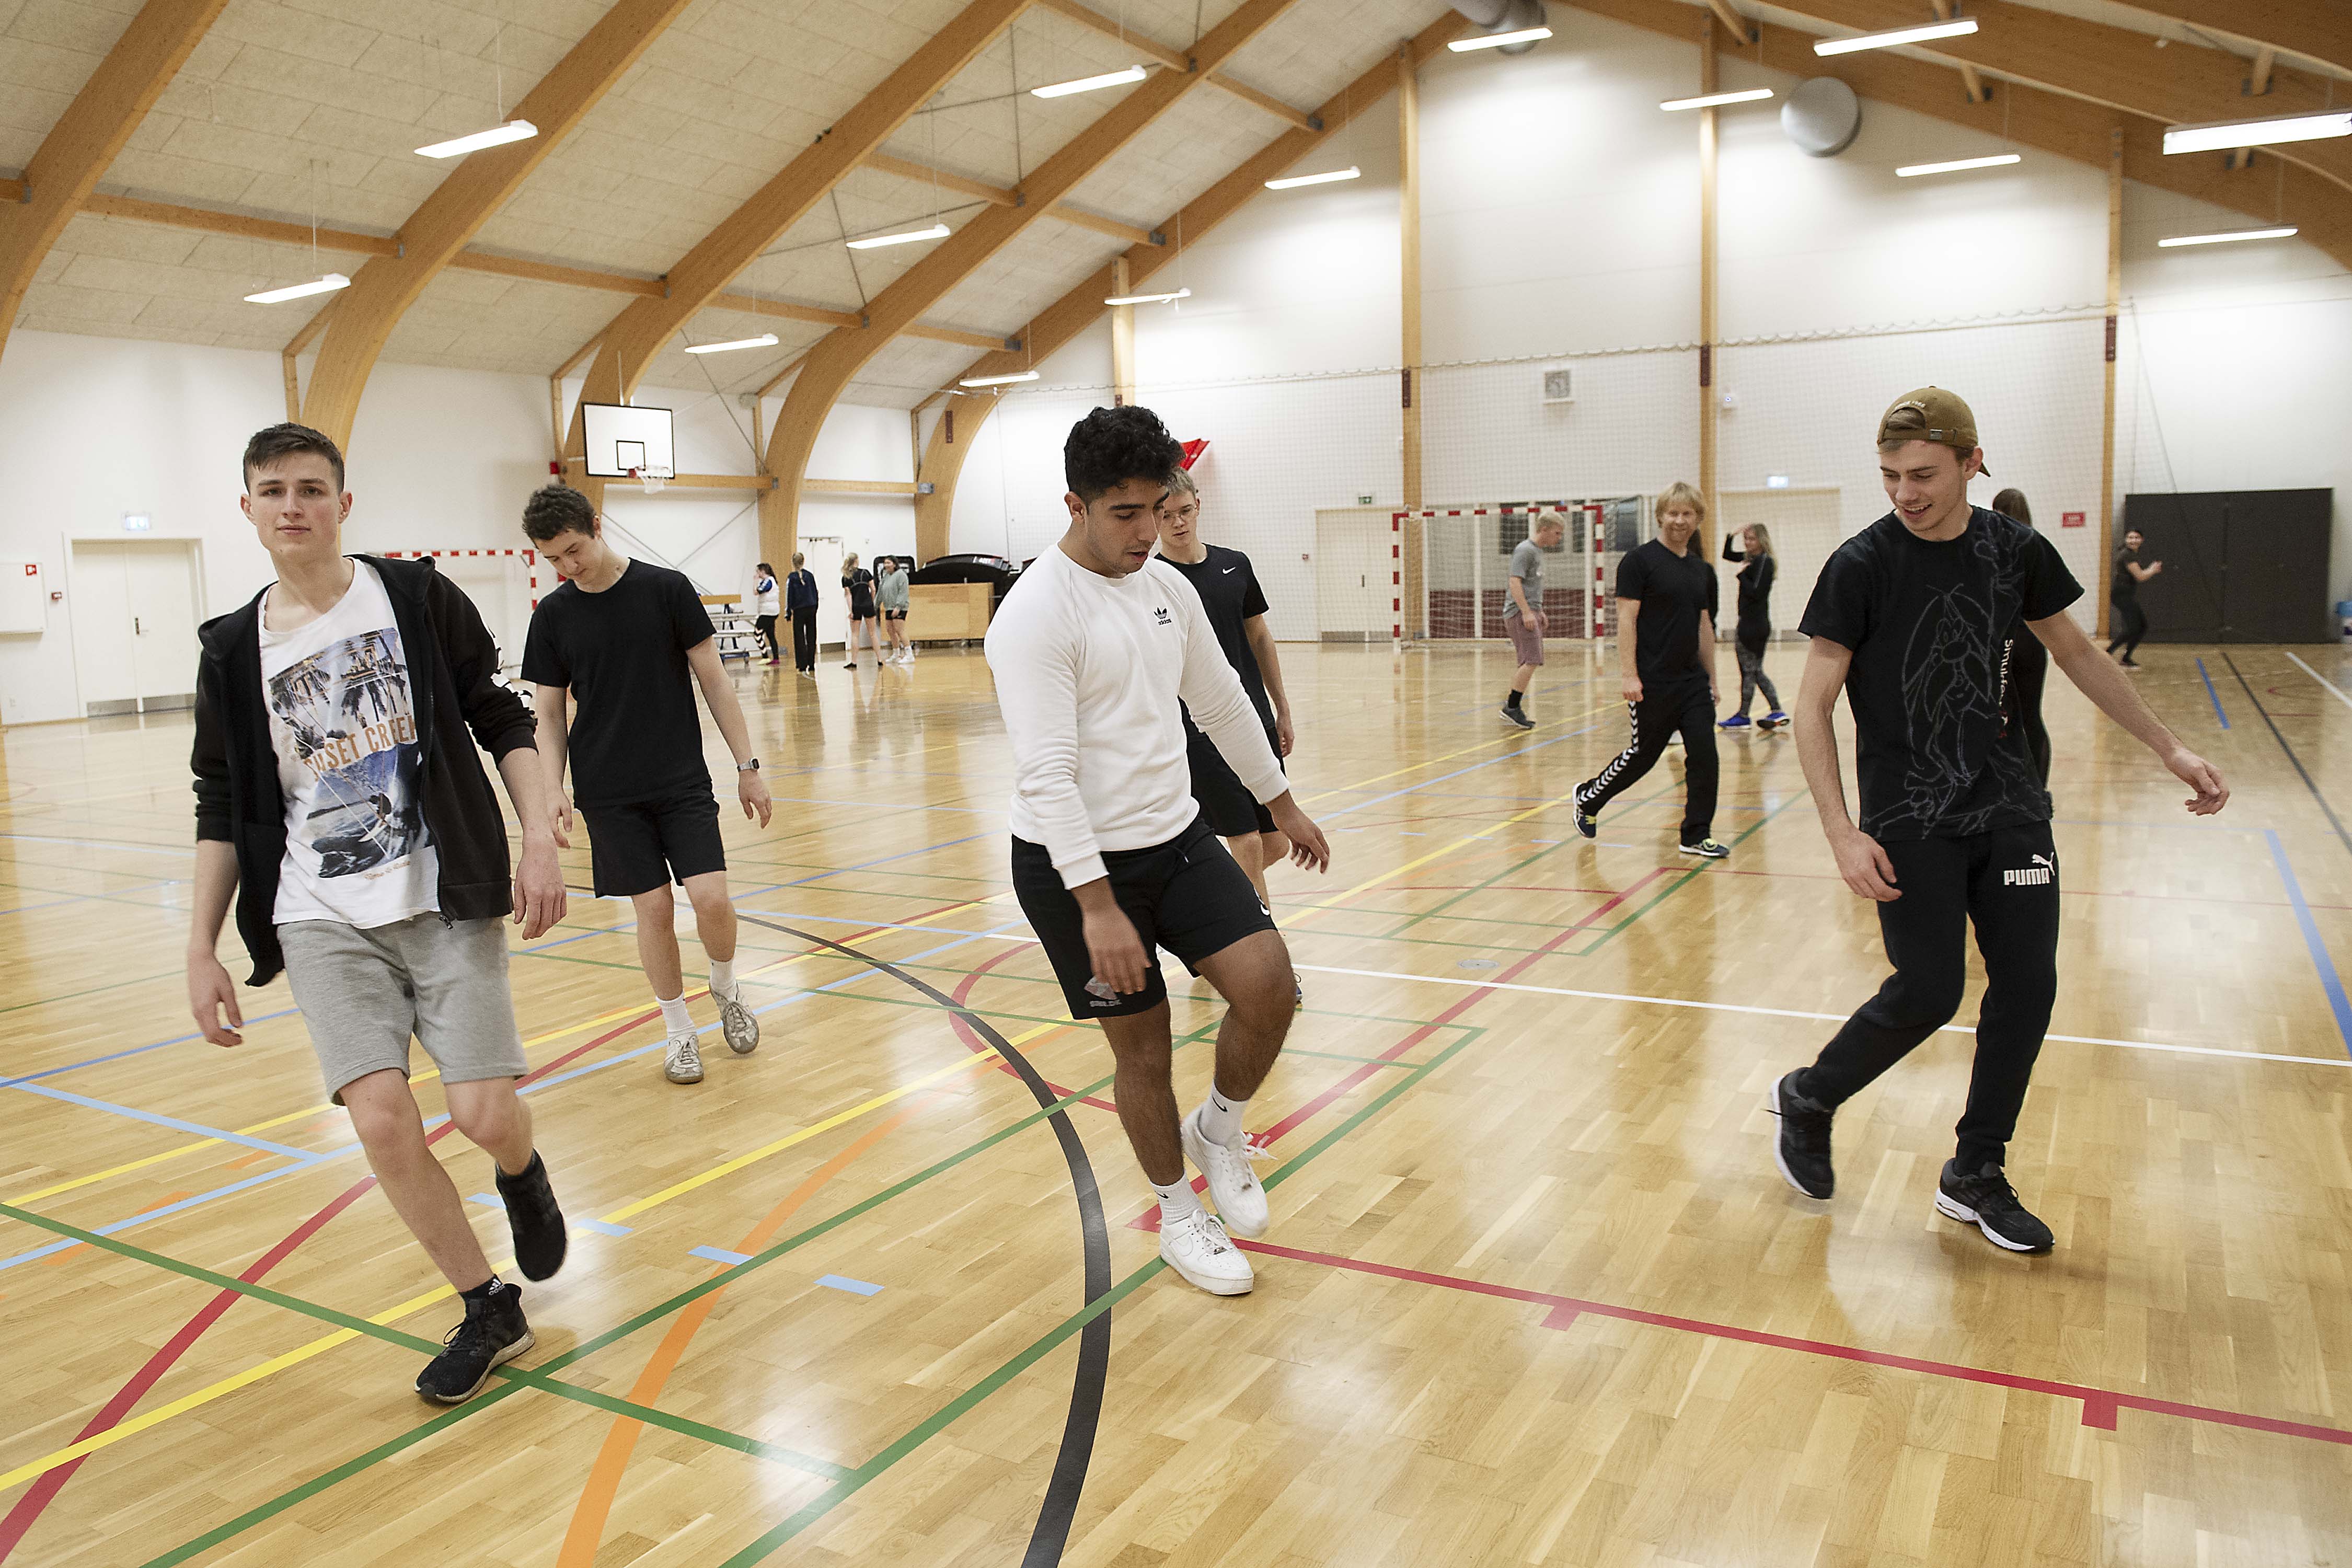 Træningslejr og Sportsophold på Danhostel Tønder i Vandrerhjem